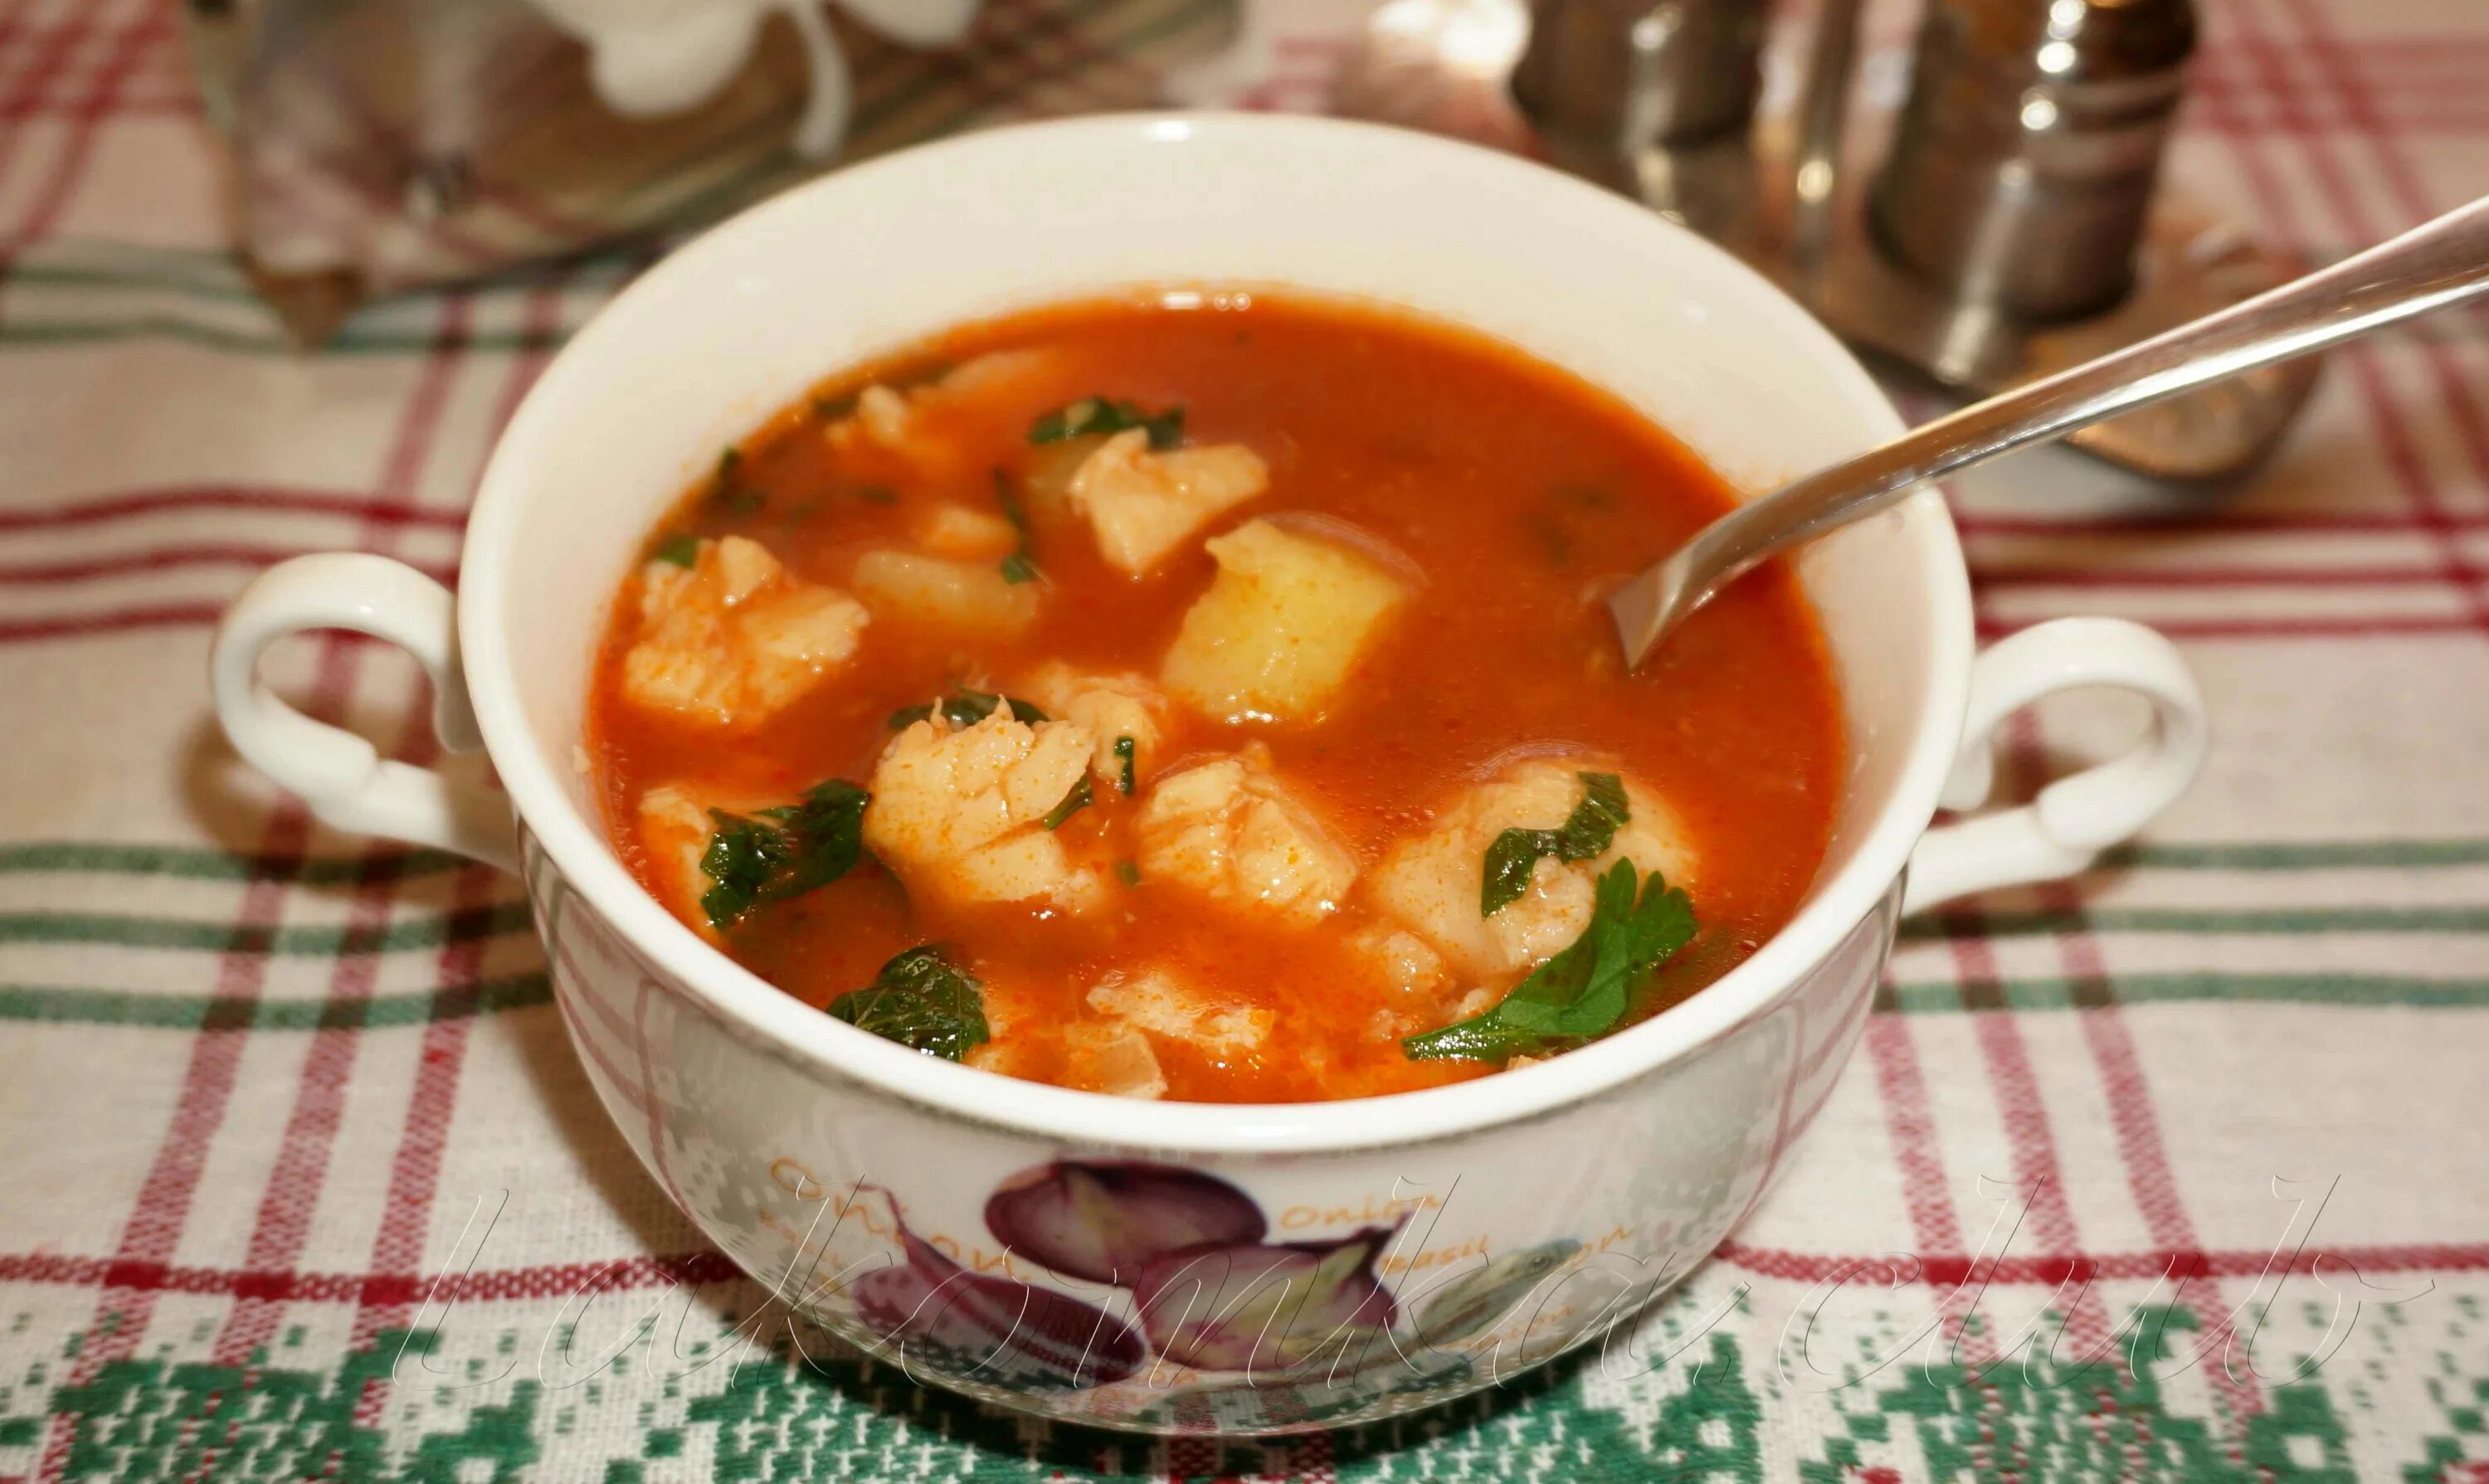 Суп с килькой. Томатный суп с рыбой. Окрошка с килькой в томатном соусе. Рыбный суп из консервов с рыбой в томатном соусе. Рыбный суп из томатной консервы